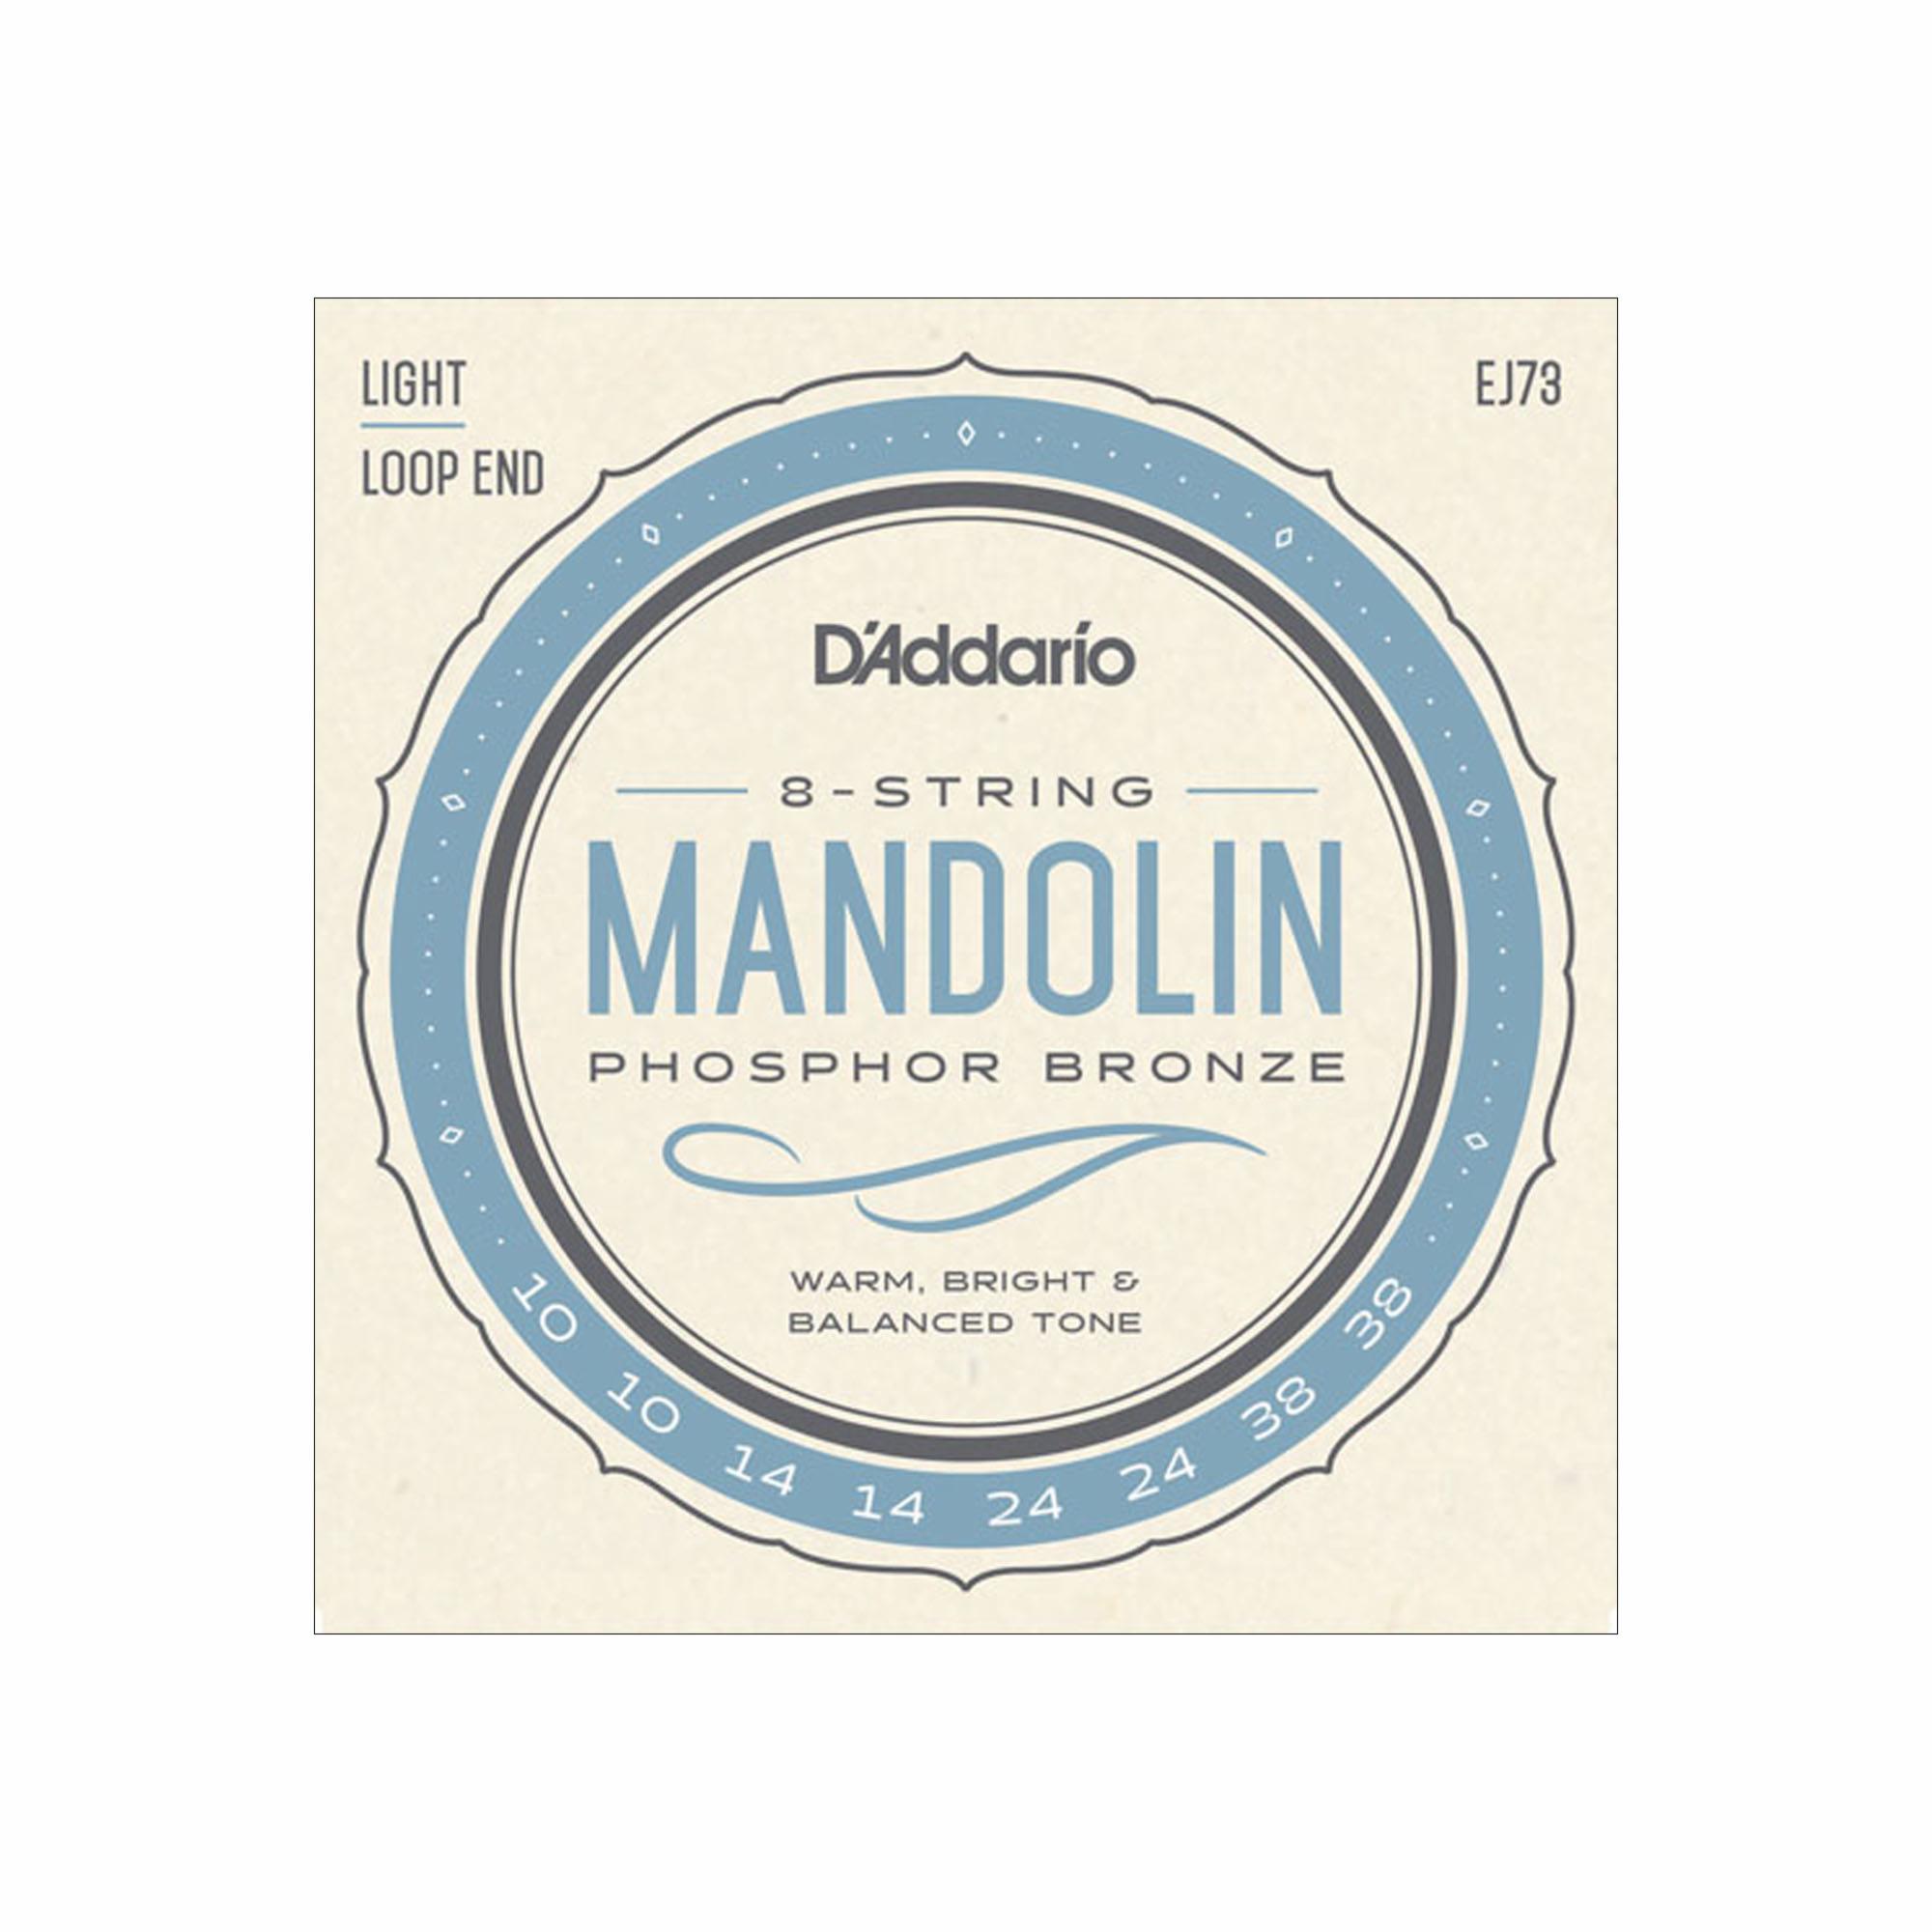 D'Addario Mandolin Folk Strings